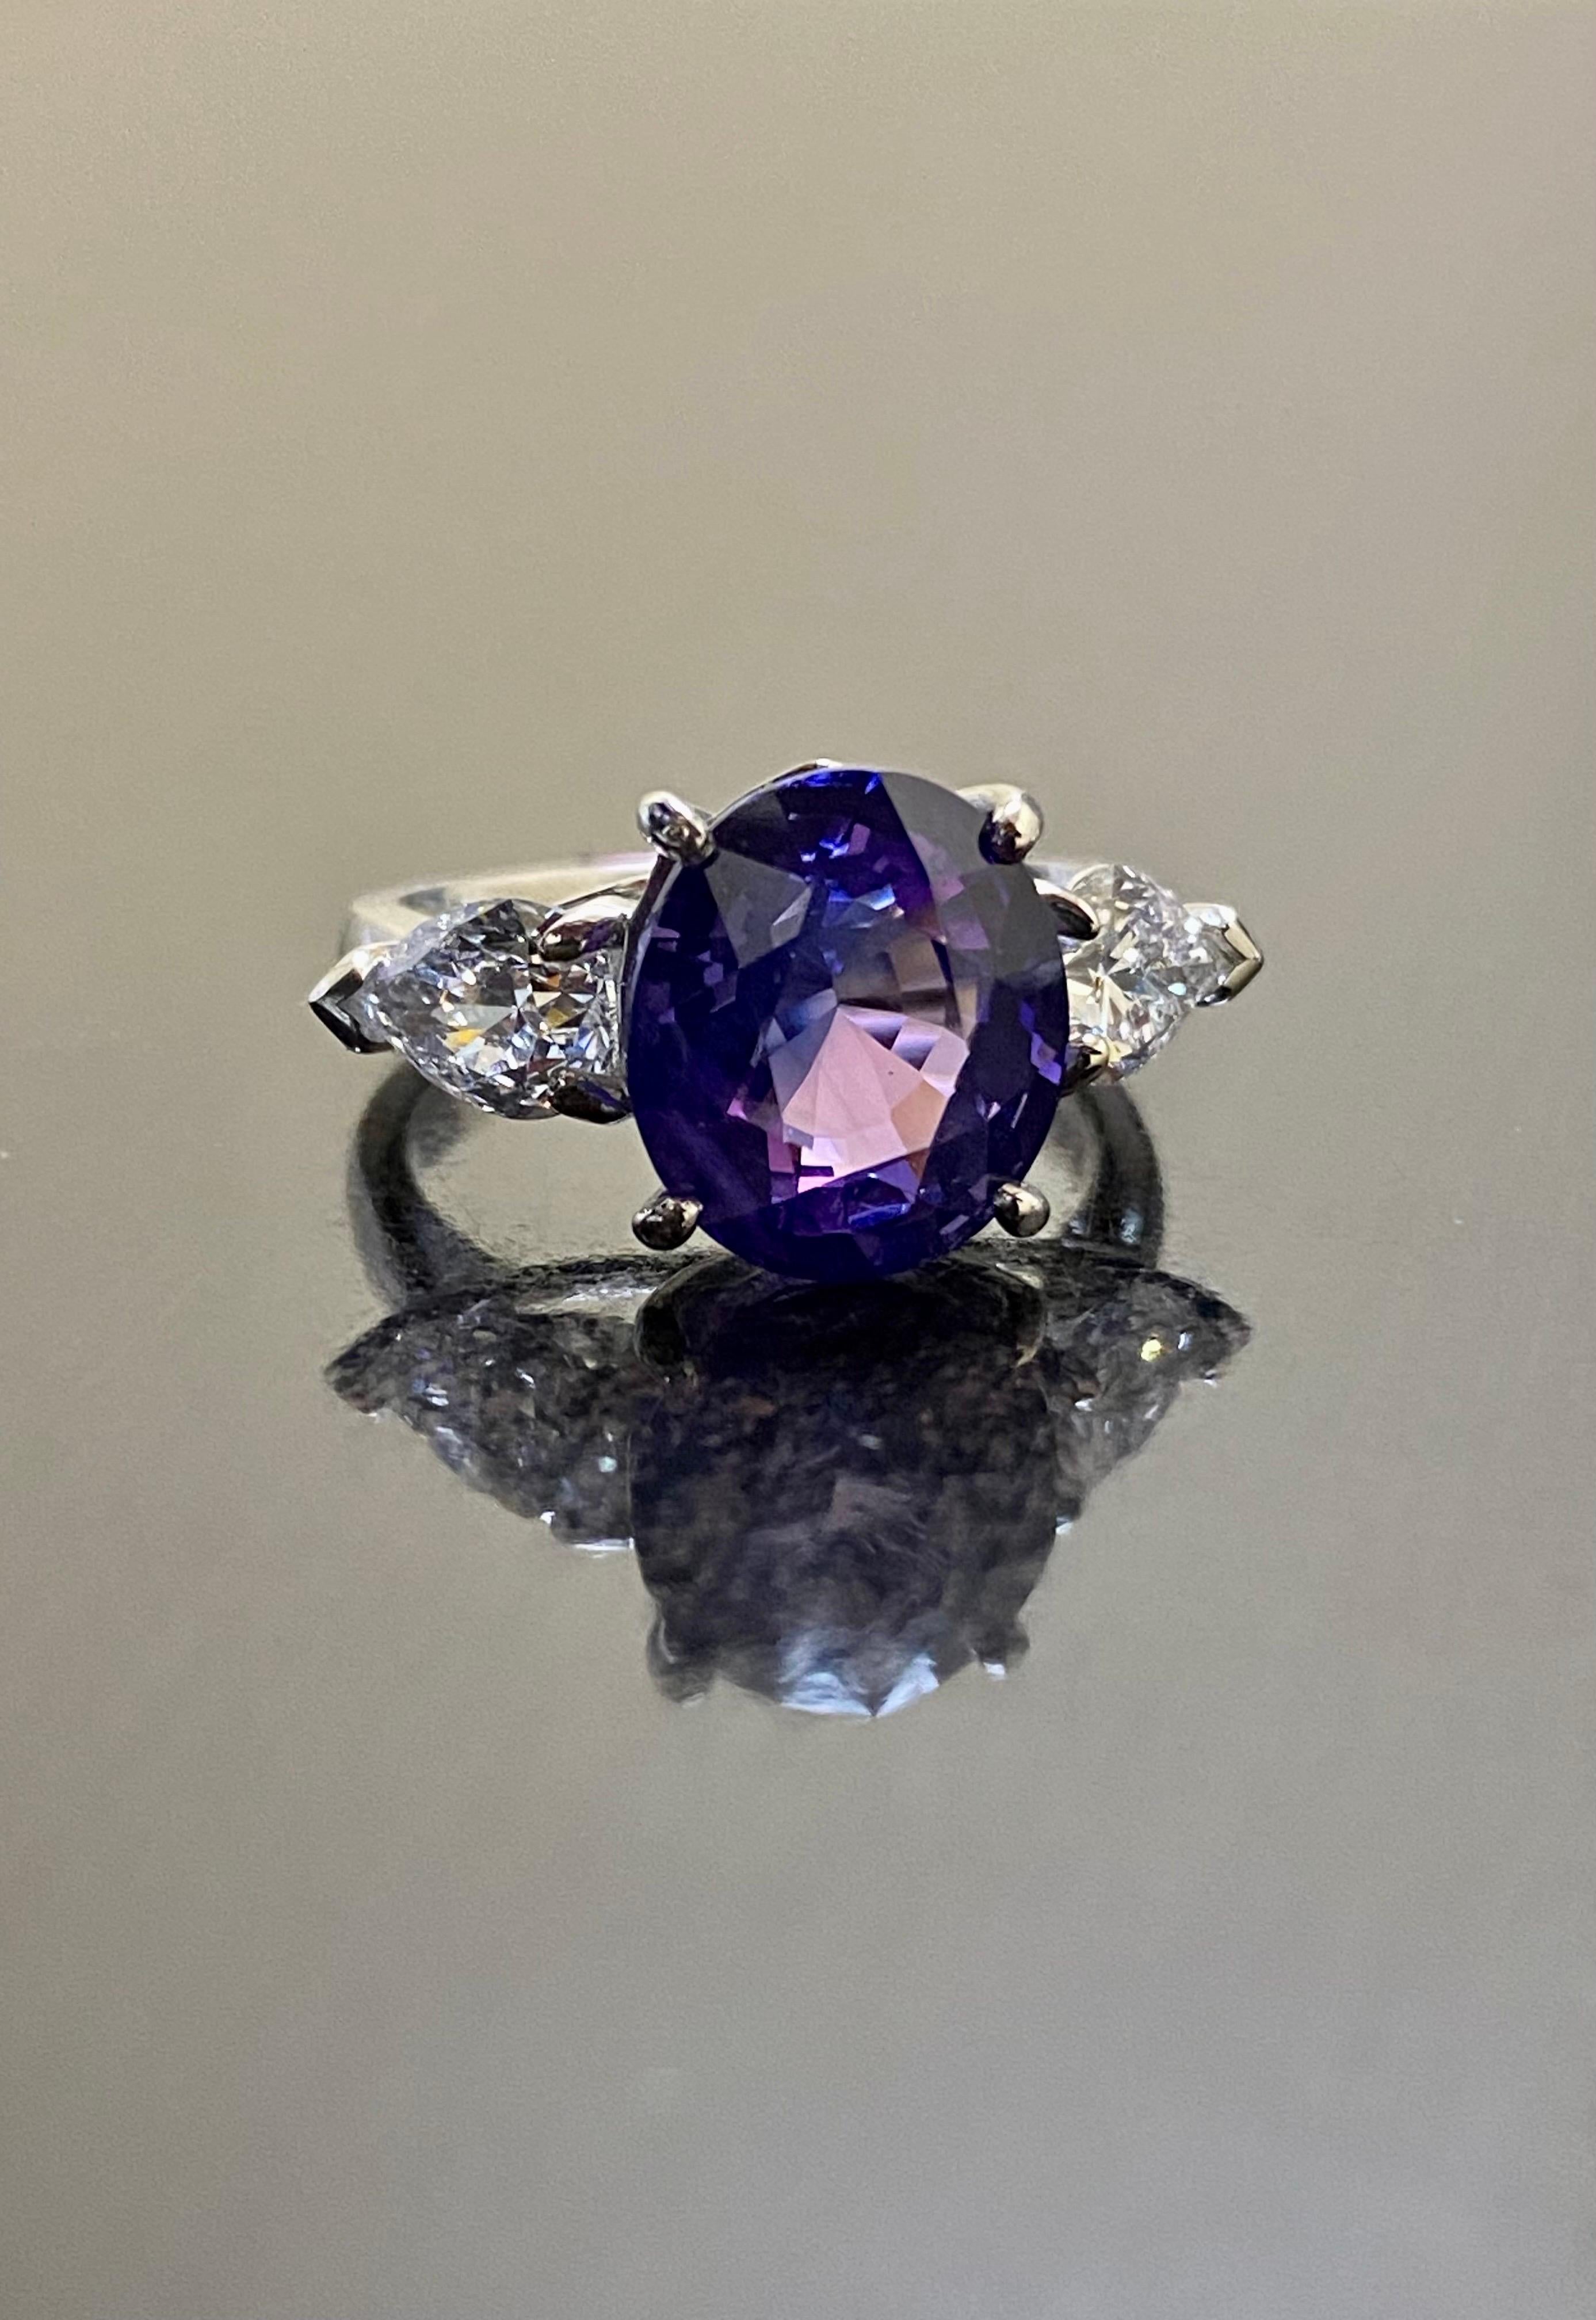 Collection Design/One Design

Métal - 90 % de platine, 10 % d'iridium.

Pierres - Saphir violet ovale certifié GIA 6,15 carats, 1 diamant poire certifié GIA 0,74 carats D couleur SI1 pureté, 1 diamant poire 0,70 carat D couleur SI1 pureté.  7.59